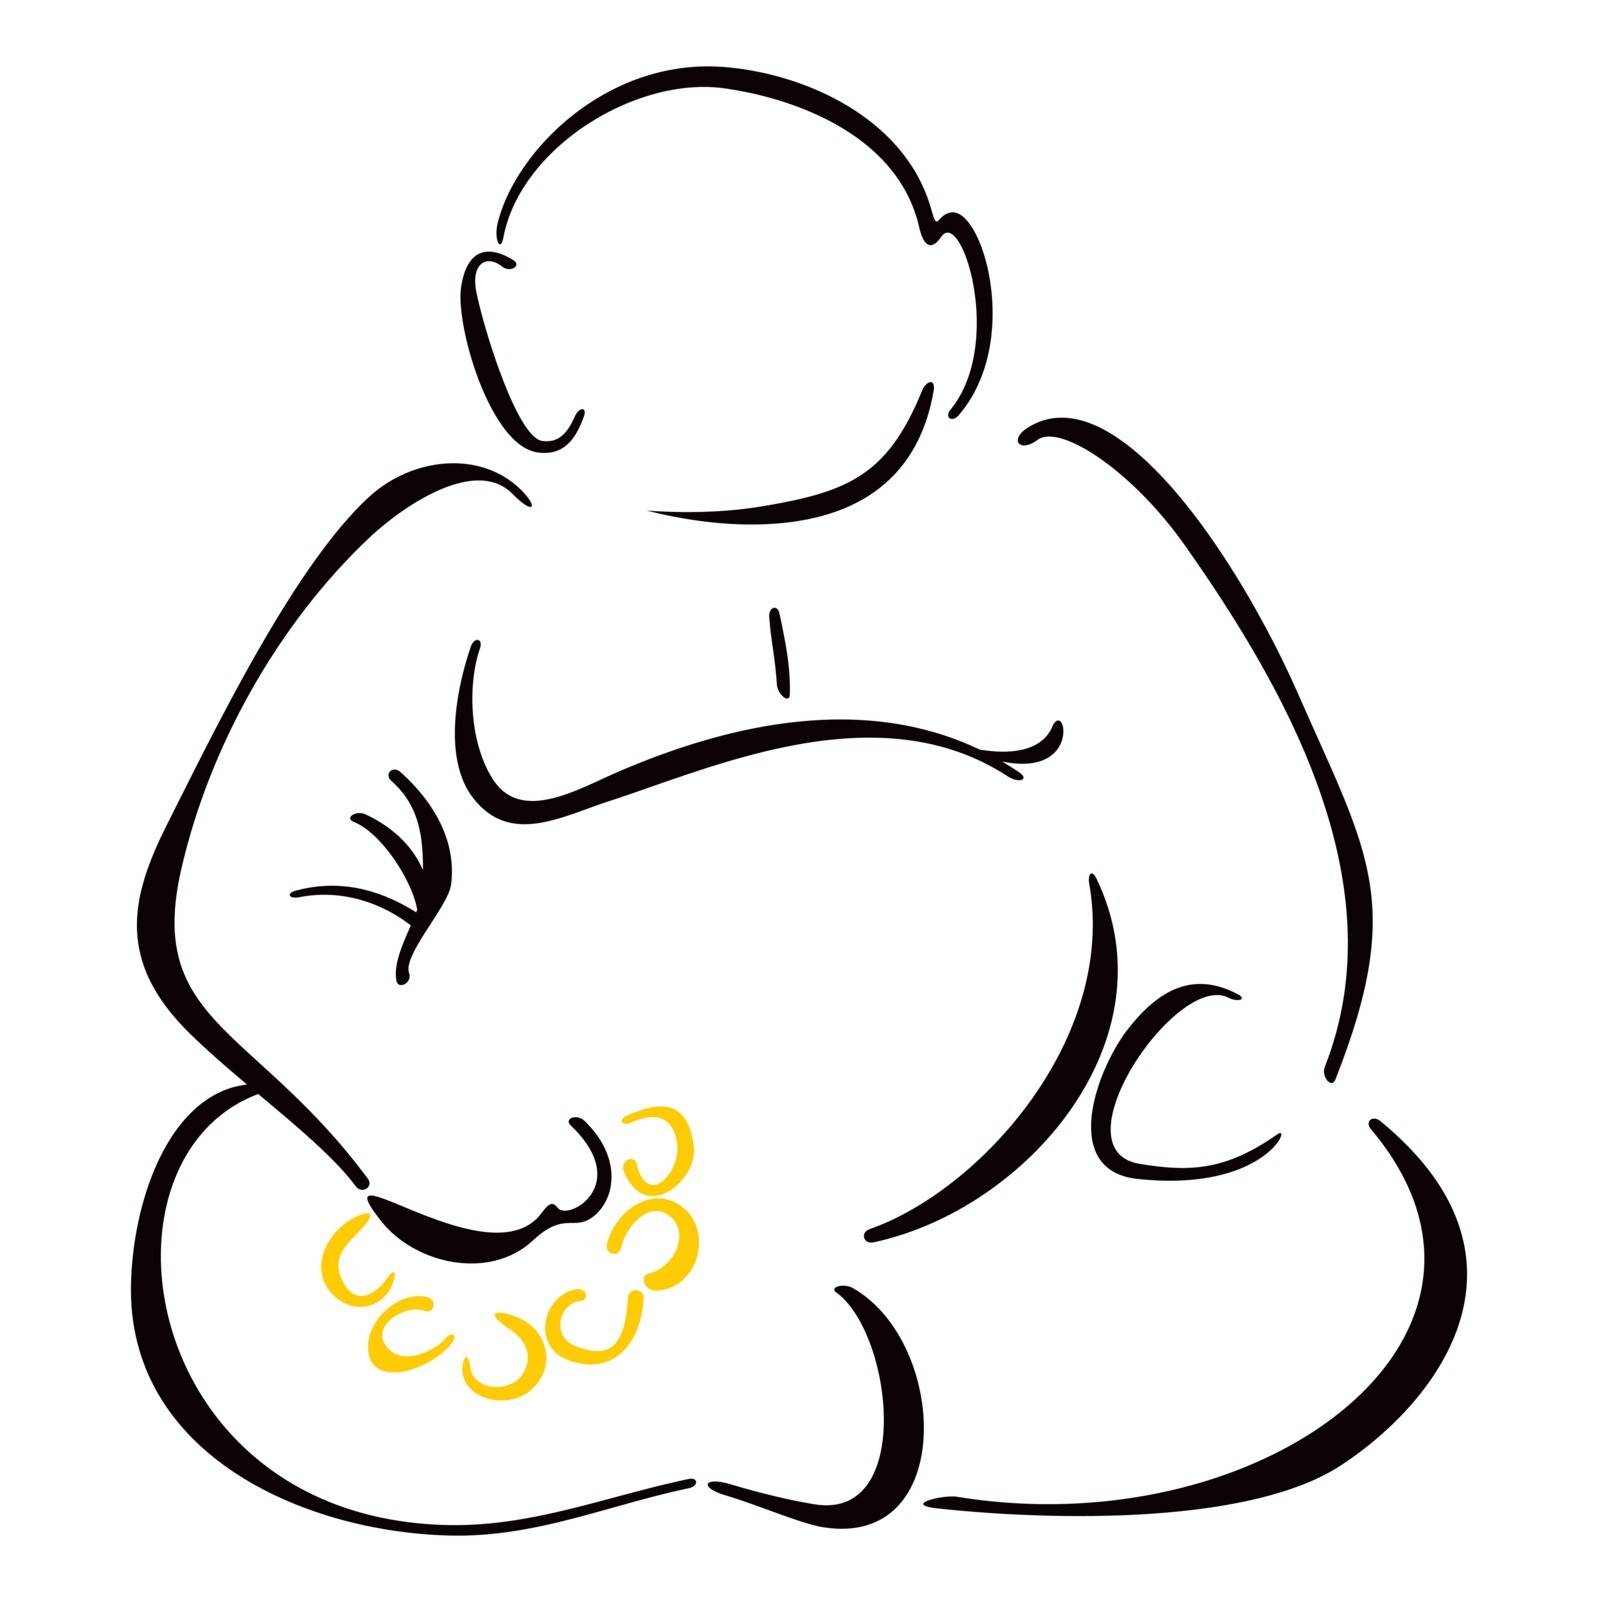 Sitting Buddha by oxygen64